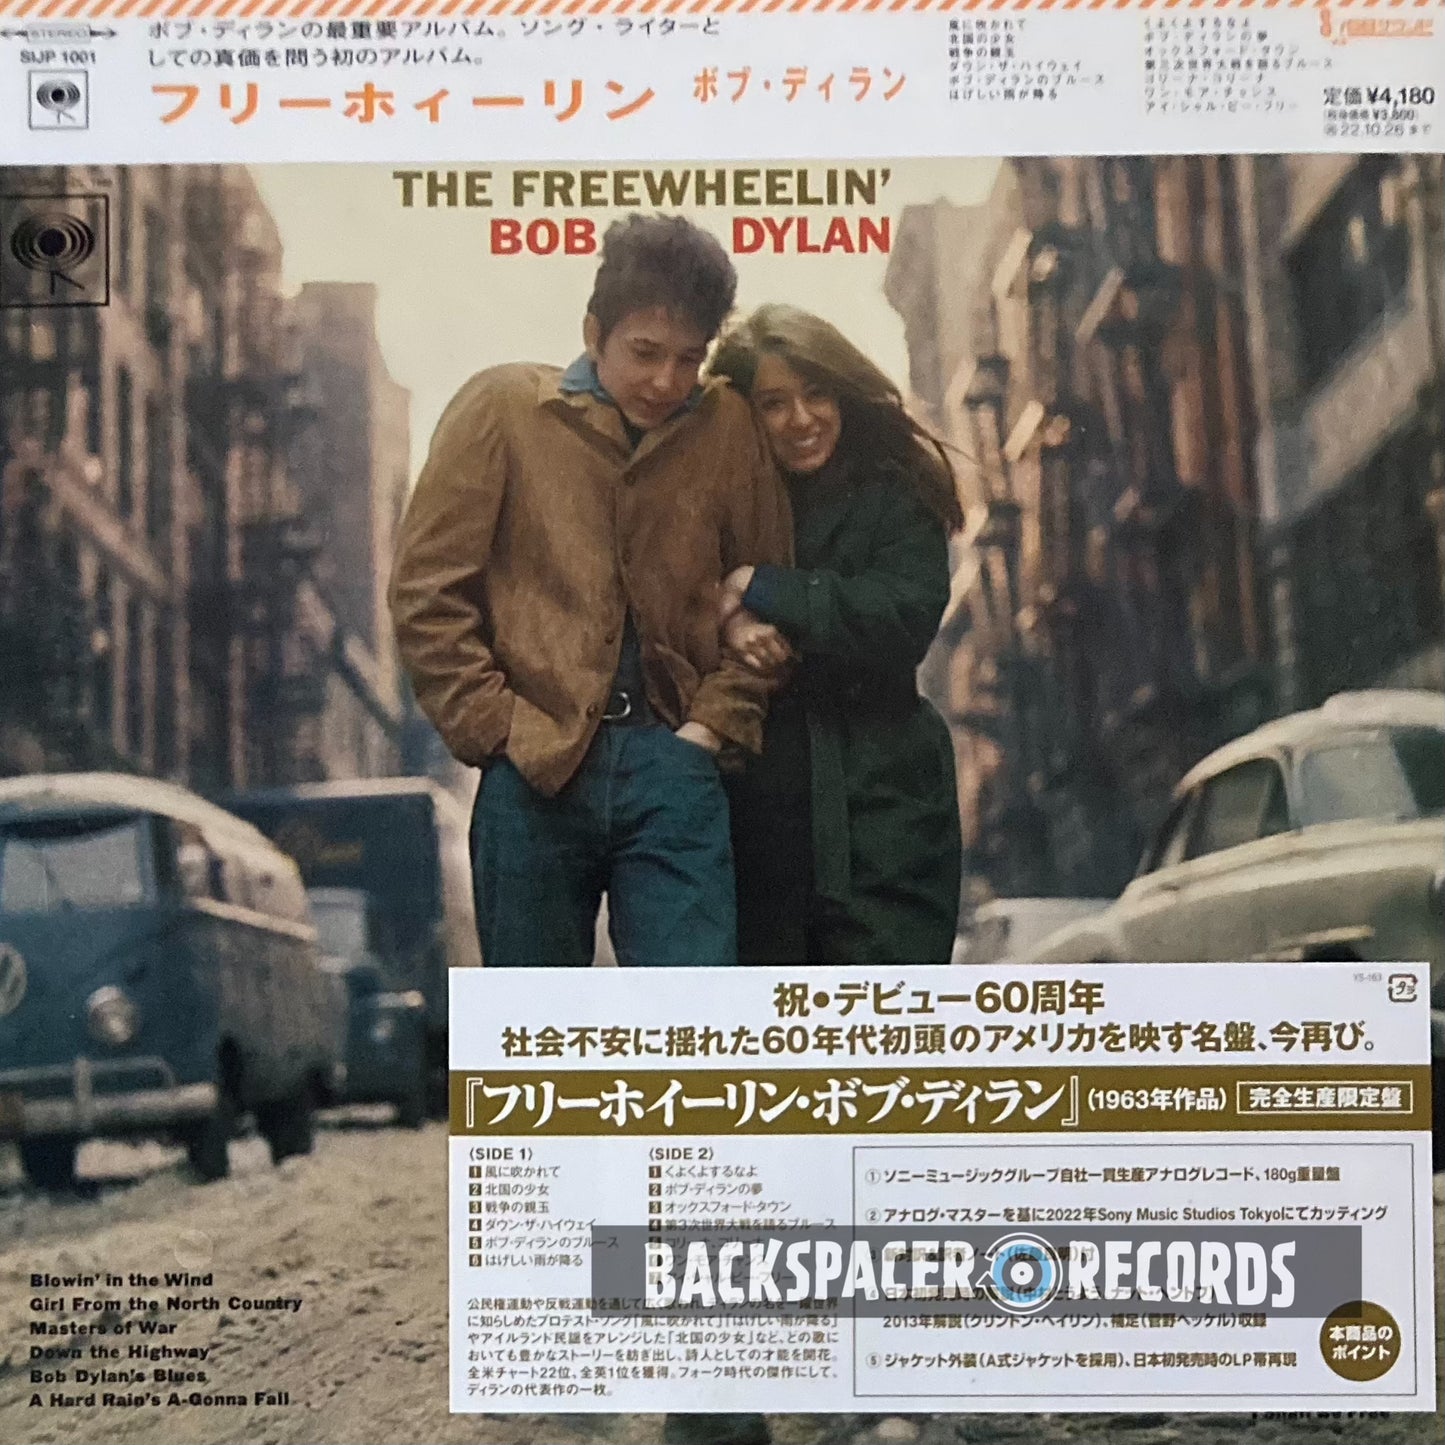 Bob Dylan – The Freewheelin' Bob Dylan LP (Limited Edition)